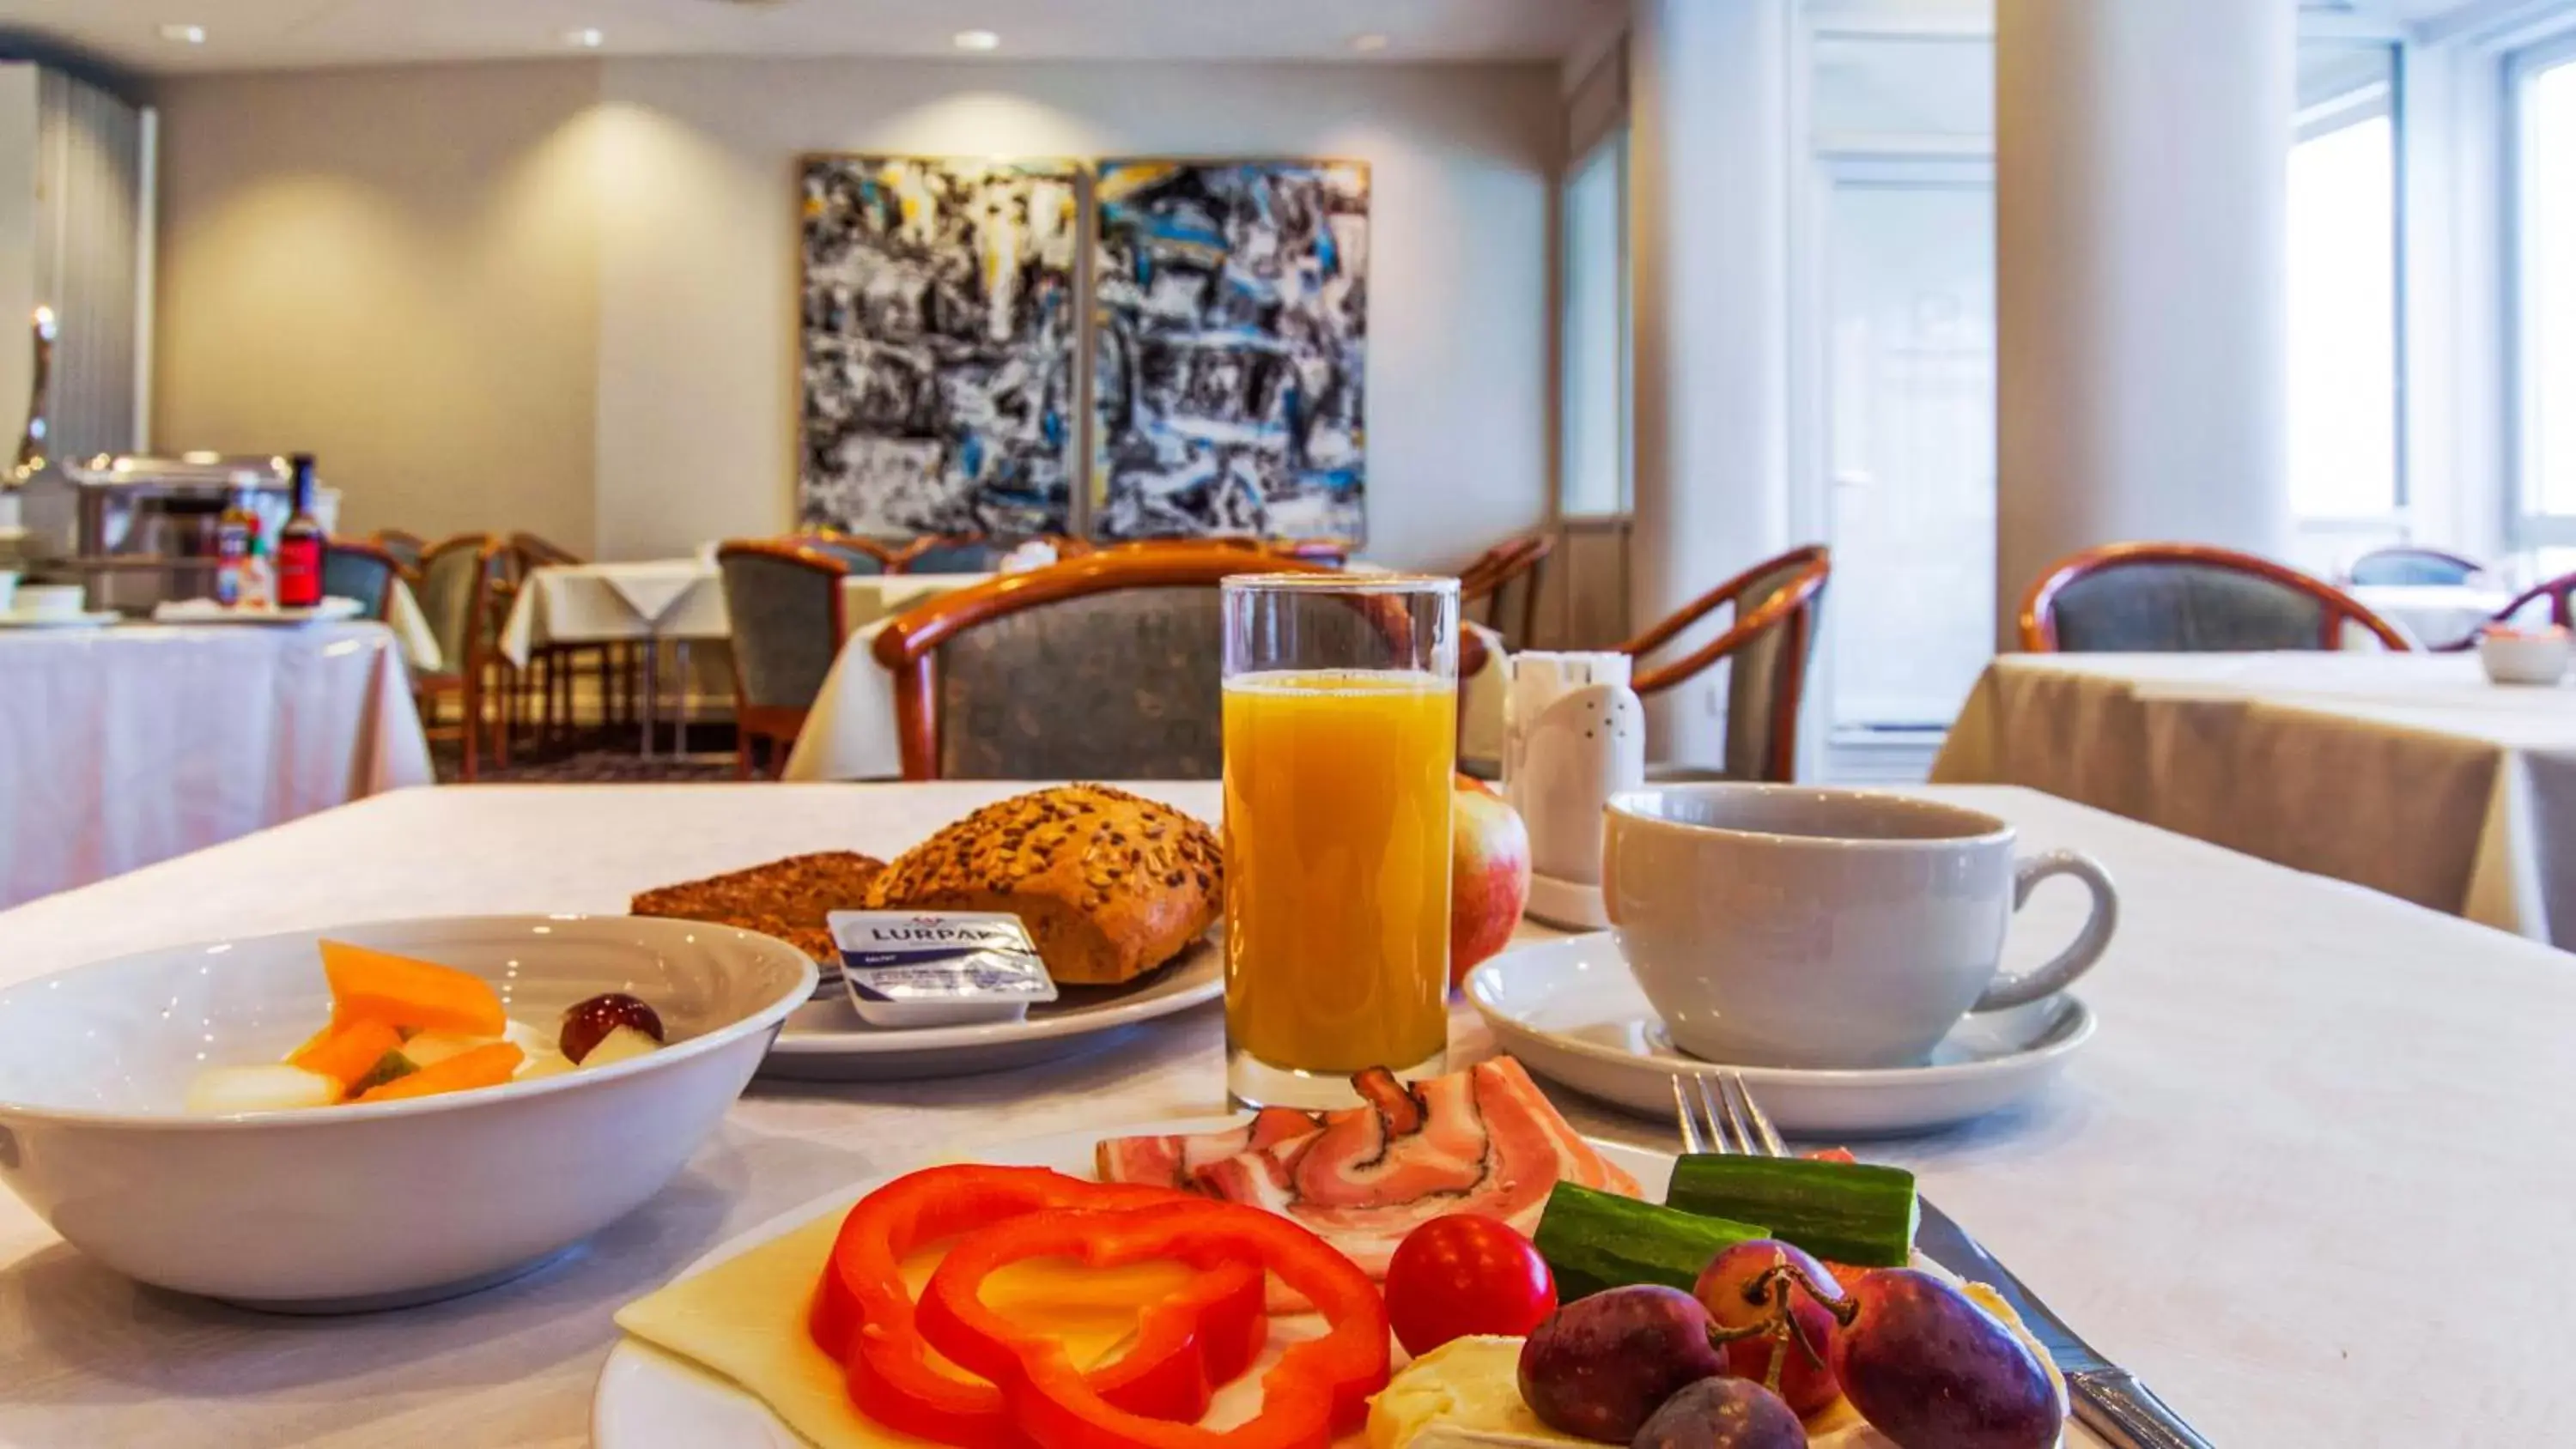 Buffet breakfast in Best Western Plus Hotel Eyde